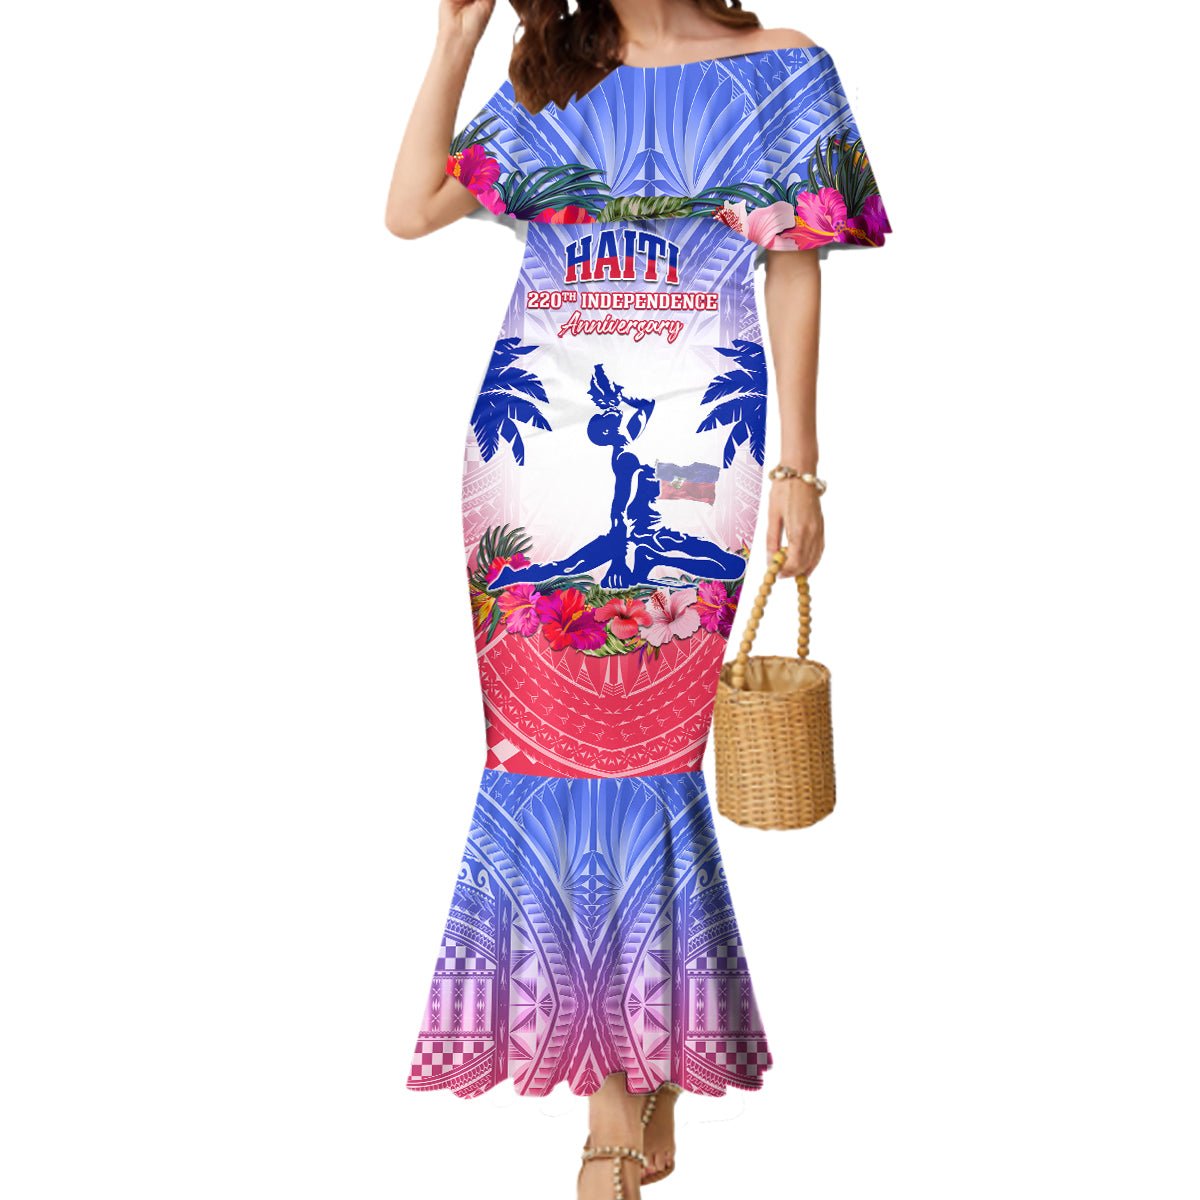 Personalised Haiti Independence Day Mermaid Dress Neg Maron Polynesian Style